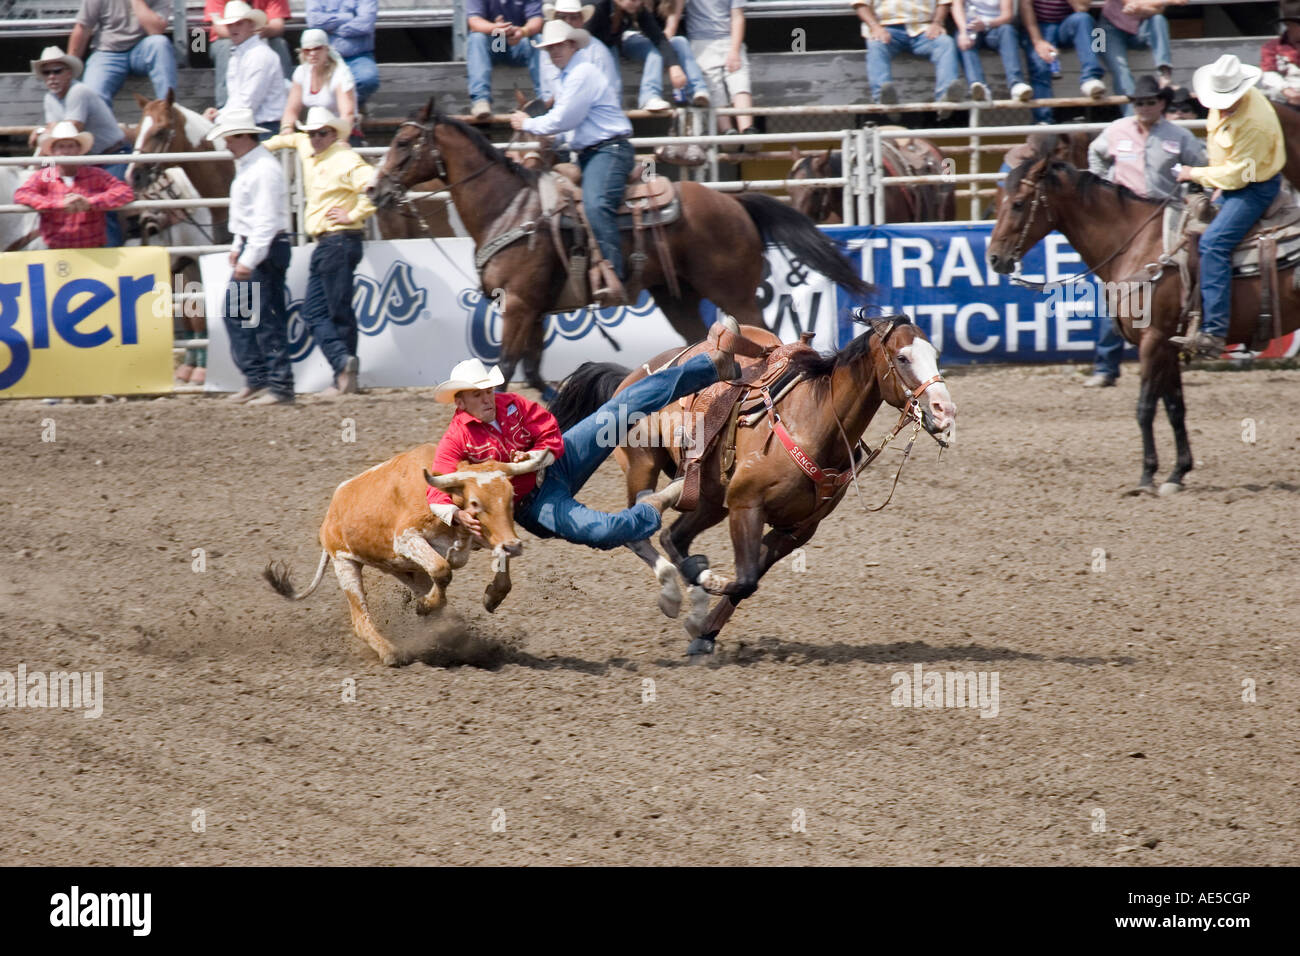 Cowboy sein galoppierenden Pferd abrutschen, eine Kalb bei den Hörnern in der Luft in einem Rodeo greifen Steuern Ringen Stockfoto